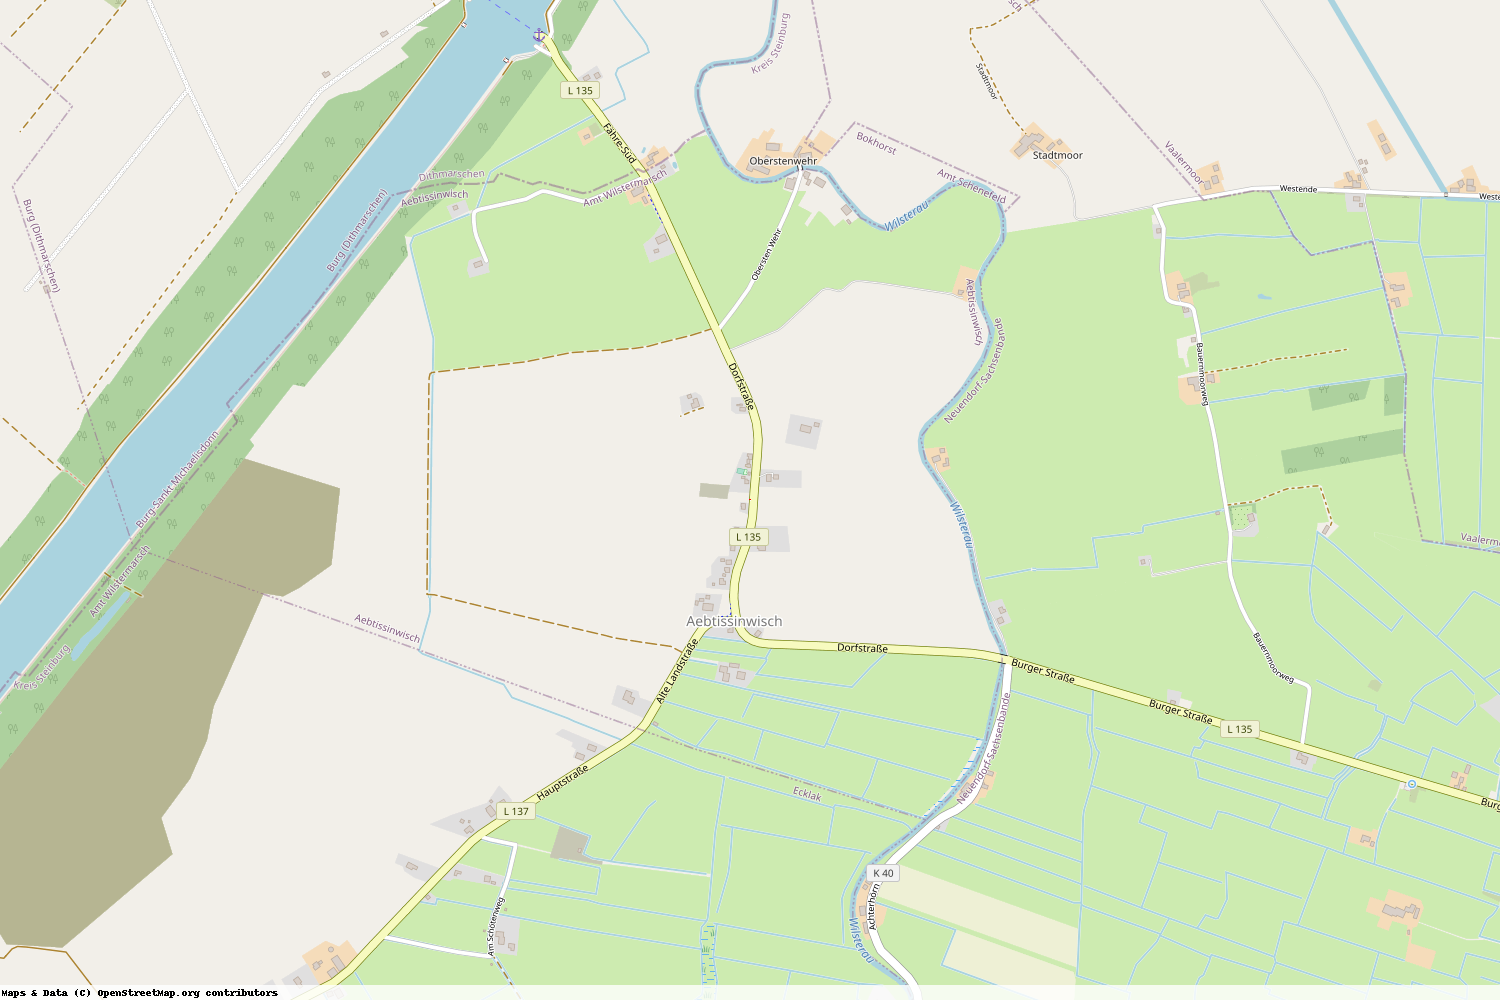 Ist gerade Stromausfall in Schleswig-Holstein - Steinburg - Aebtissinwisch?